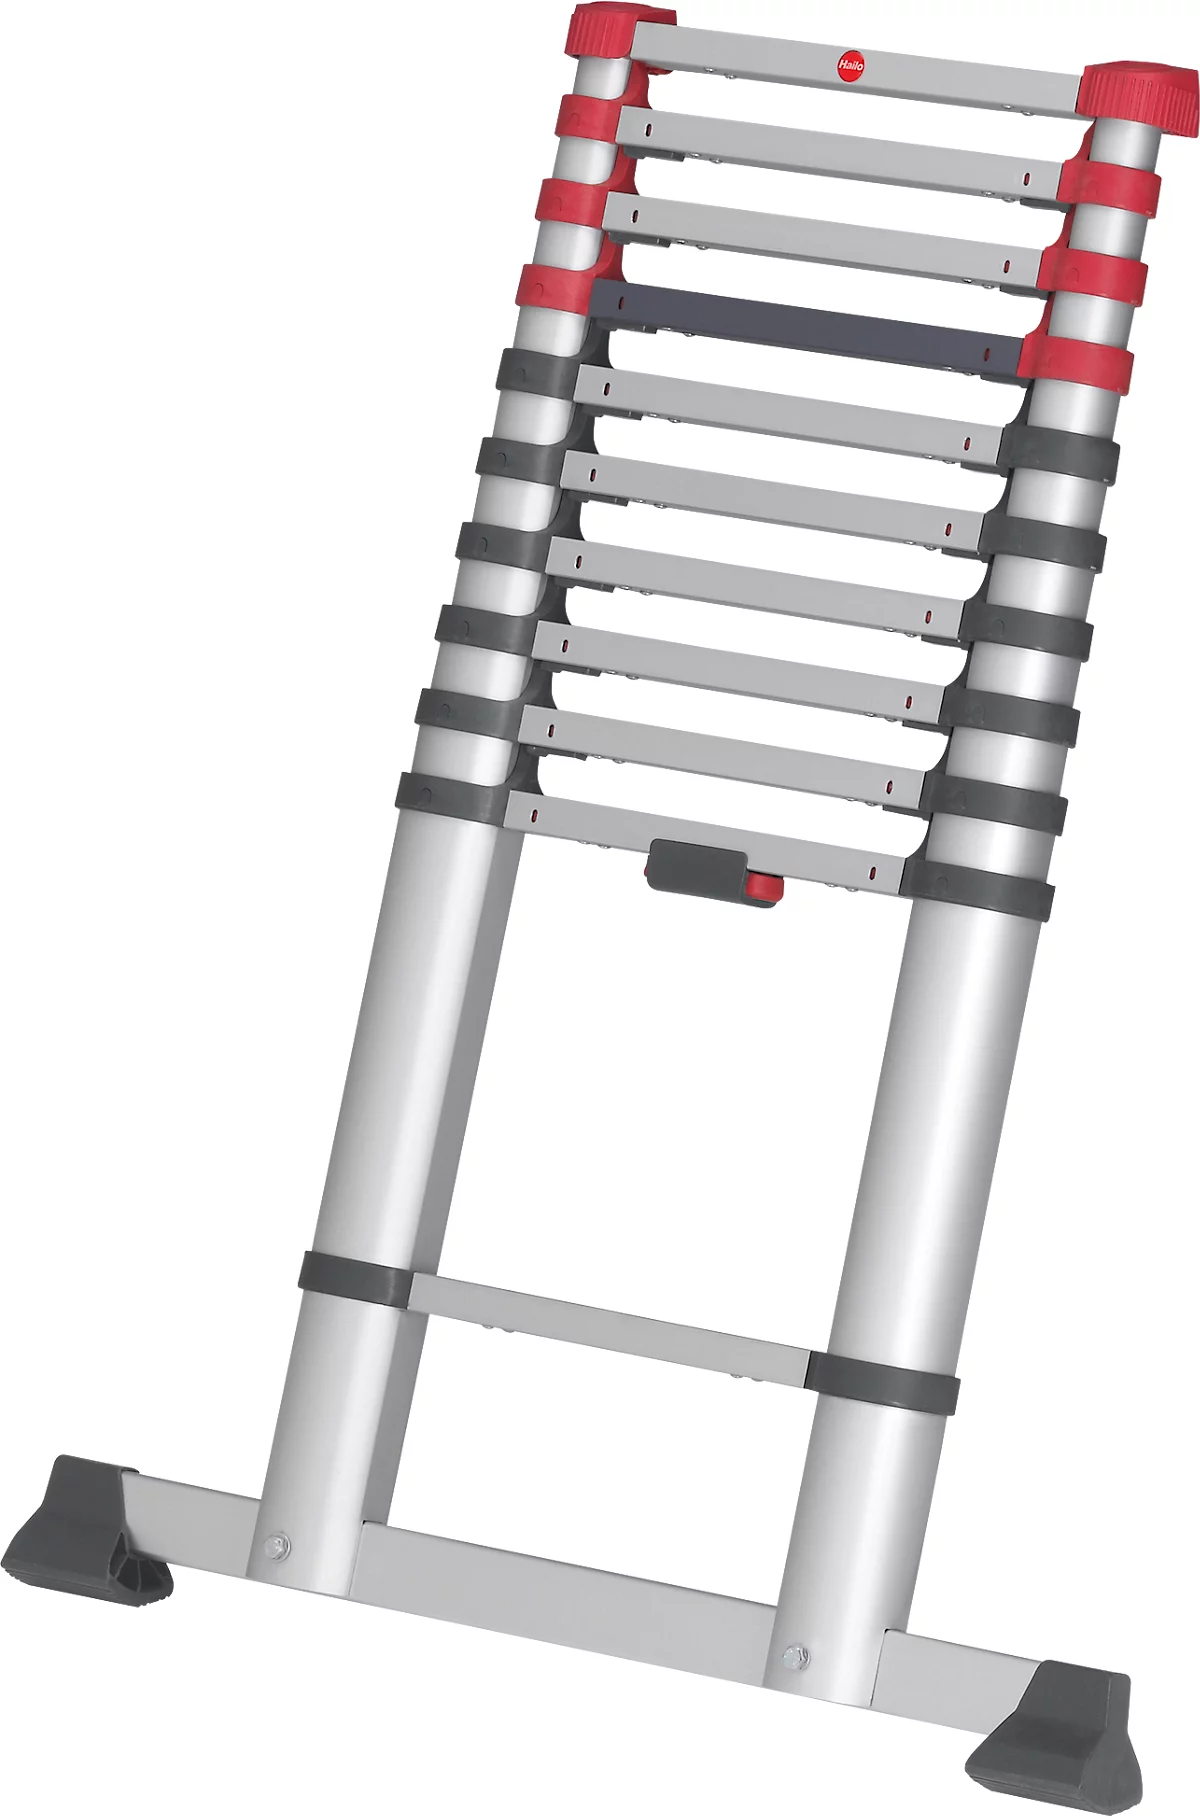 Escalera telescópica Hailo T80 FlexLine, EN 131-6, regulable en altura, desbloqueo con una mano, travesaño, hasta 150 kg, 11 peldaños